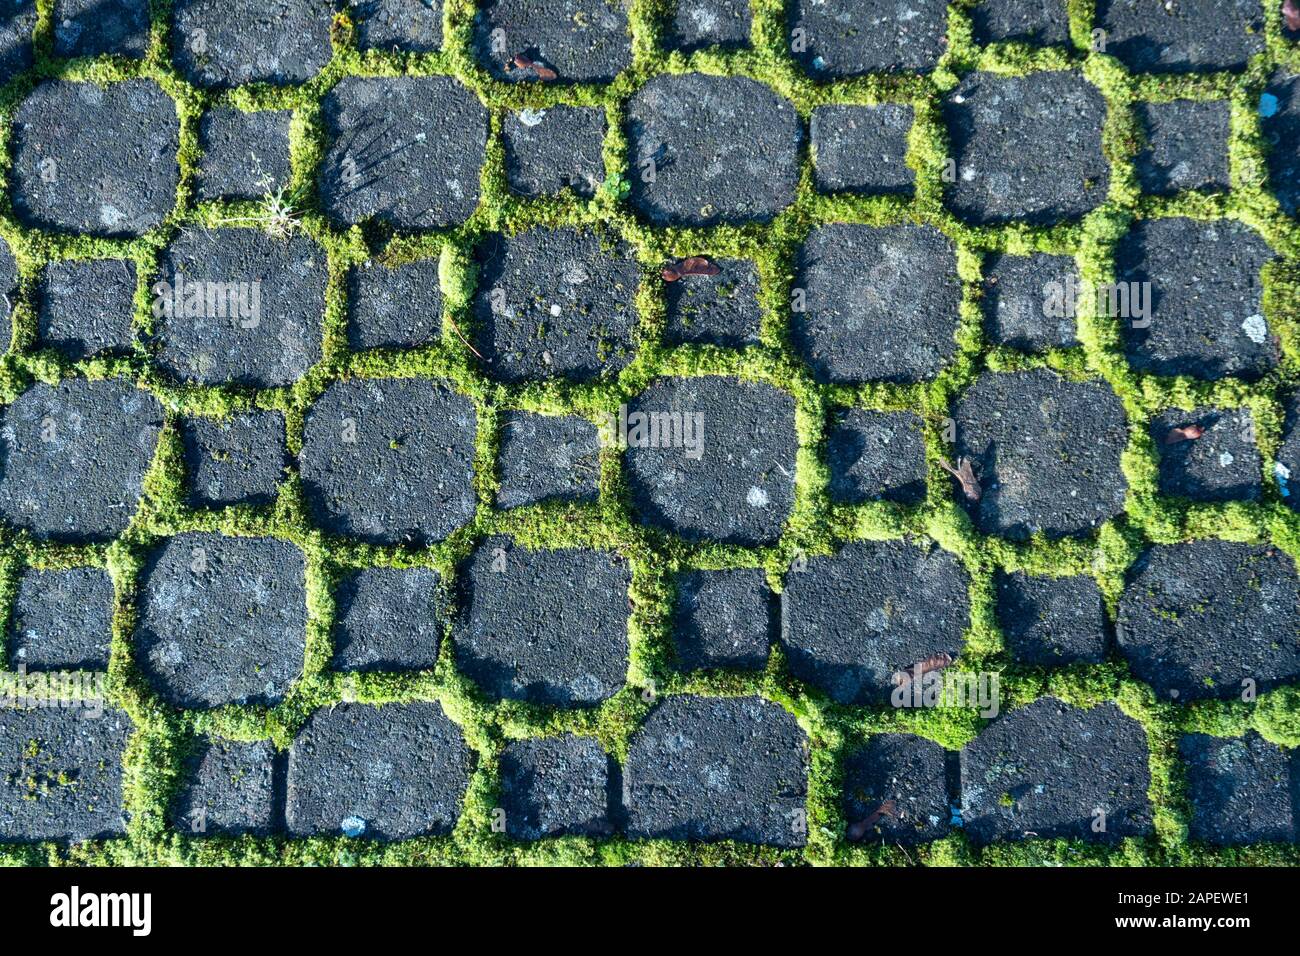 Motifs d'arrière-plan - pierres noires d'un chemin entouré de mousse vert clair dans la lumière du soleil Banque D'Images